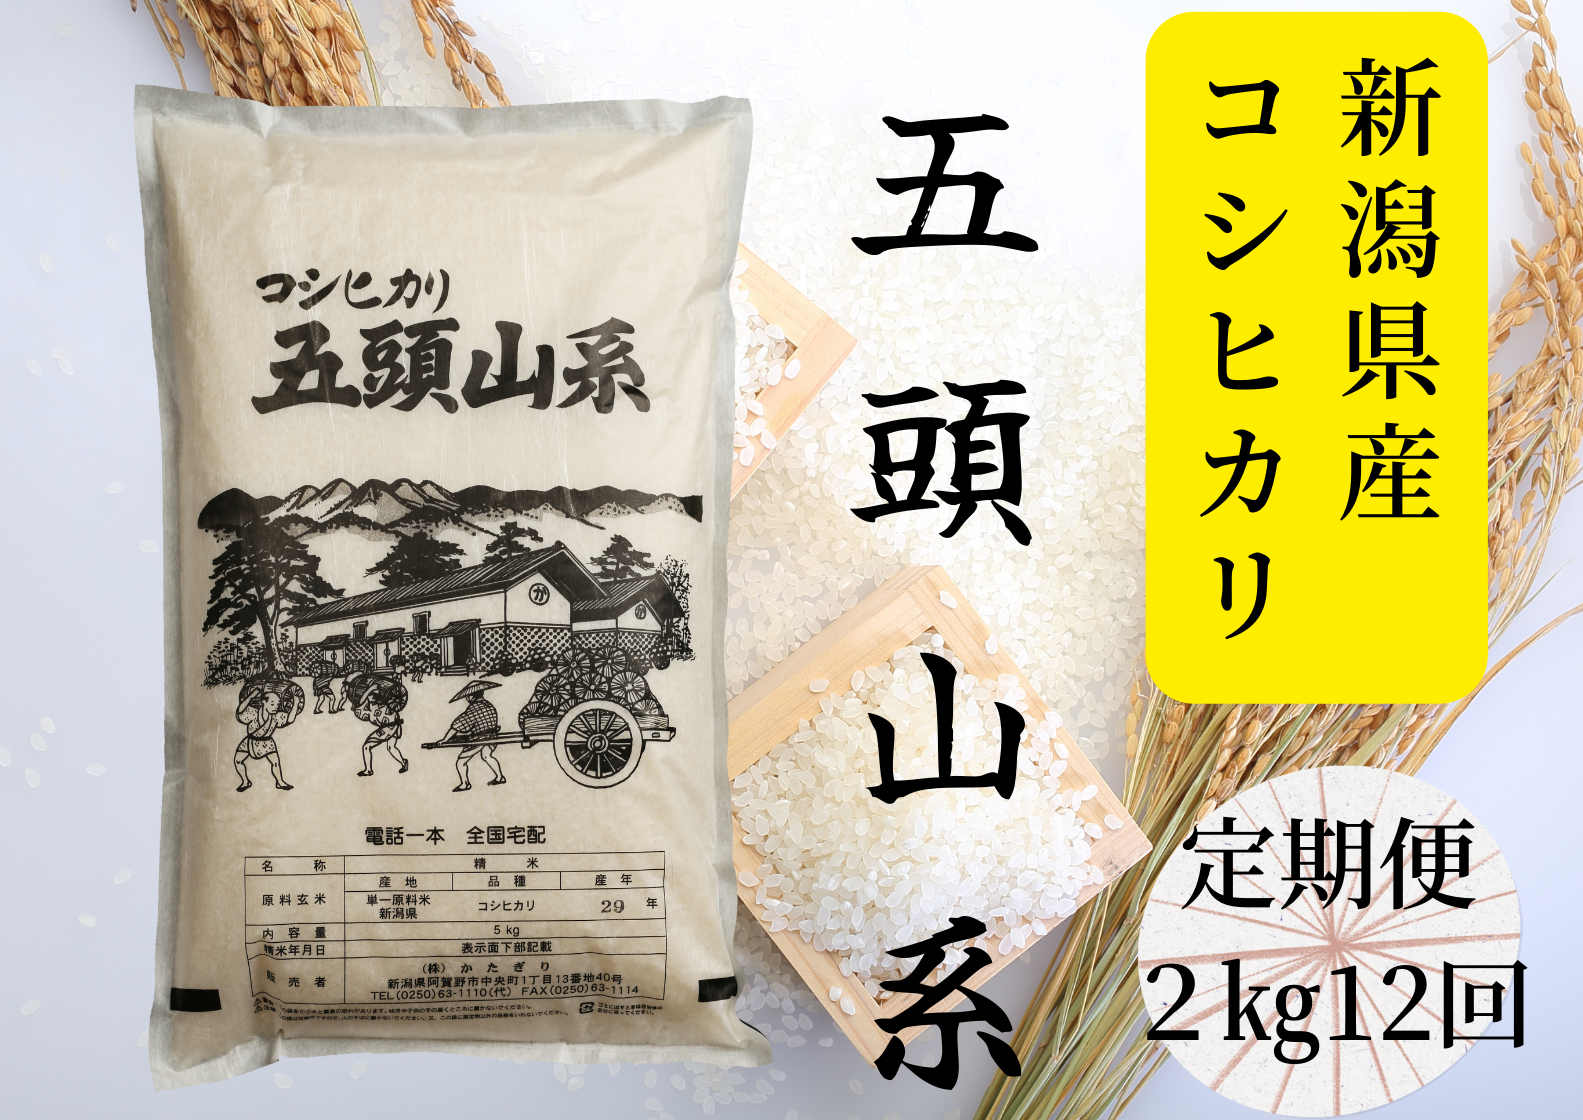 【12回定期便】「米屋のこだわり阿賀野市産」コシヒカリ2kg×12回 1E21053